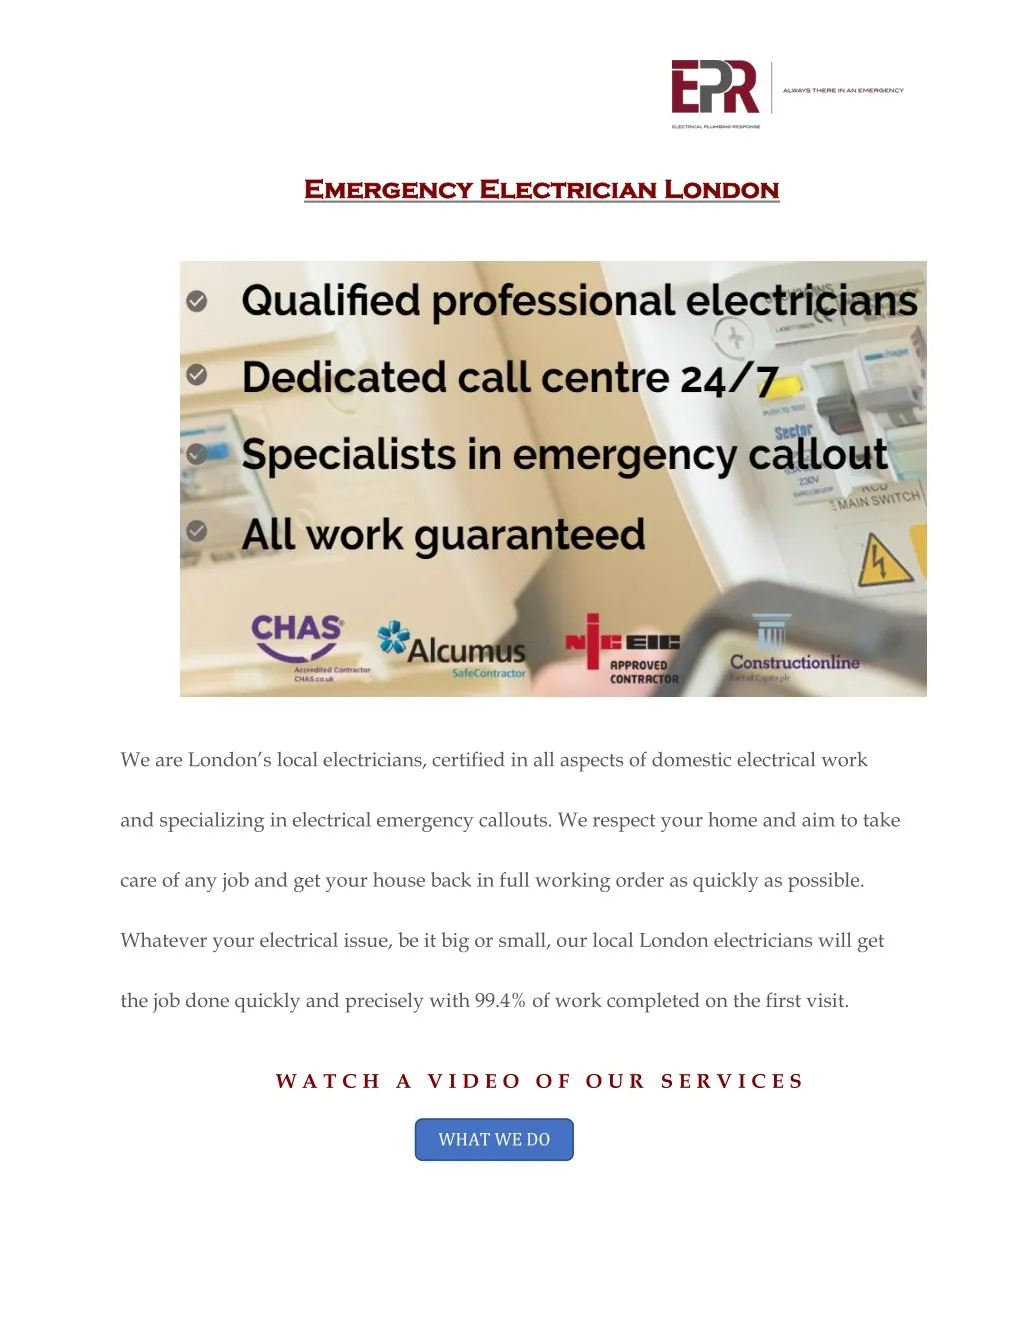 emergency electrician london emergency